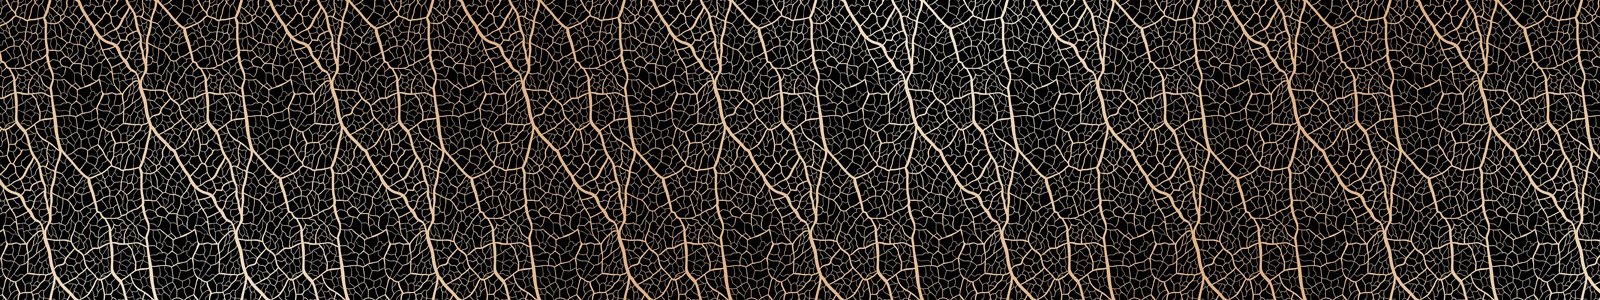 №7406 - Паттерн текстуры листьев, темный фон